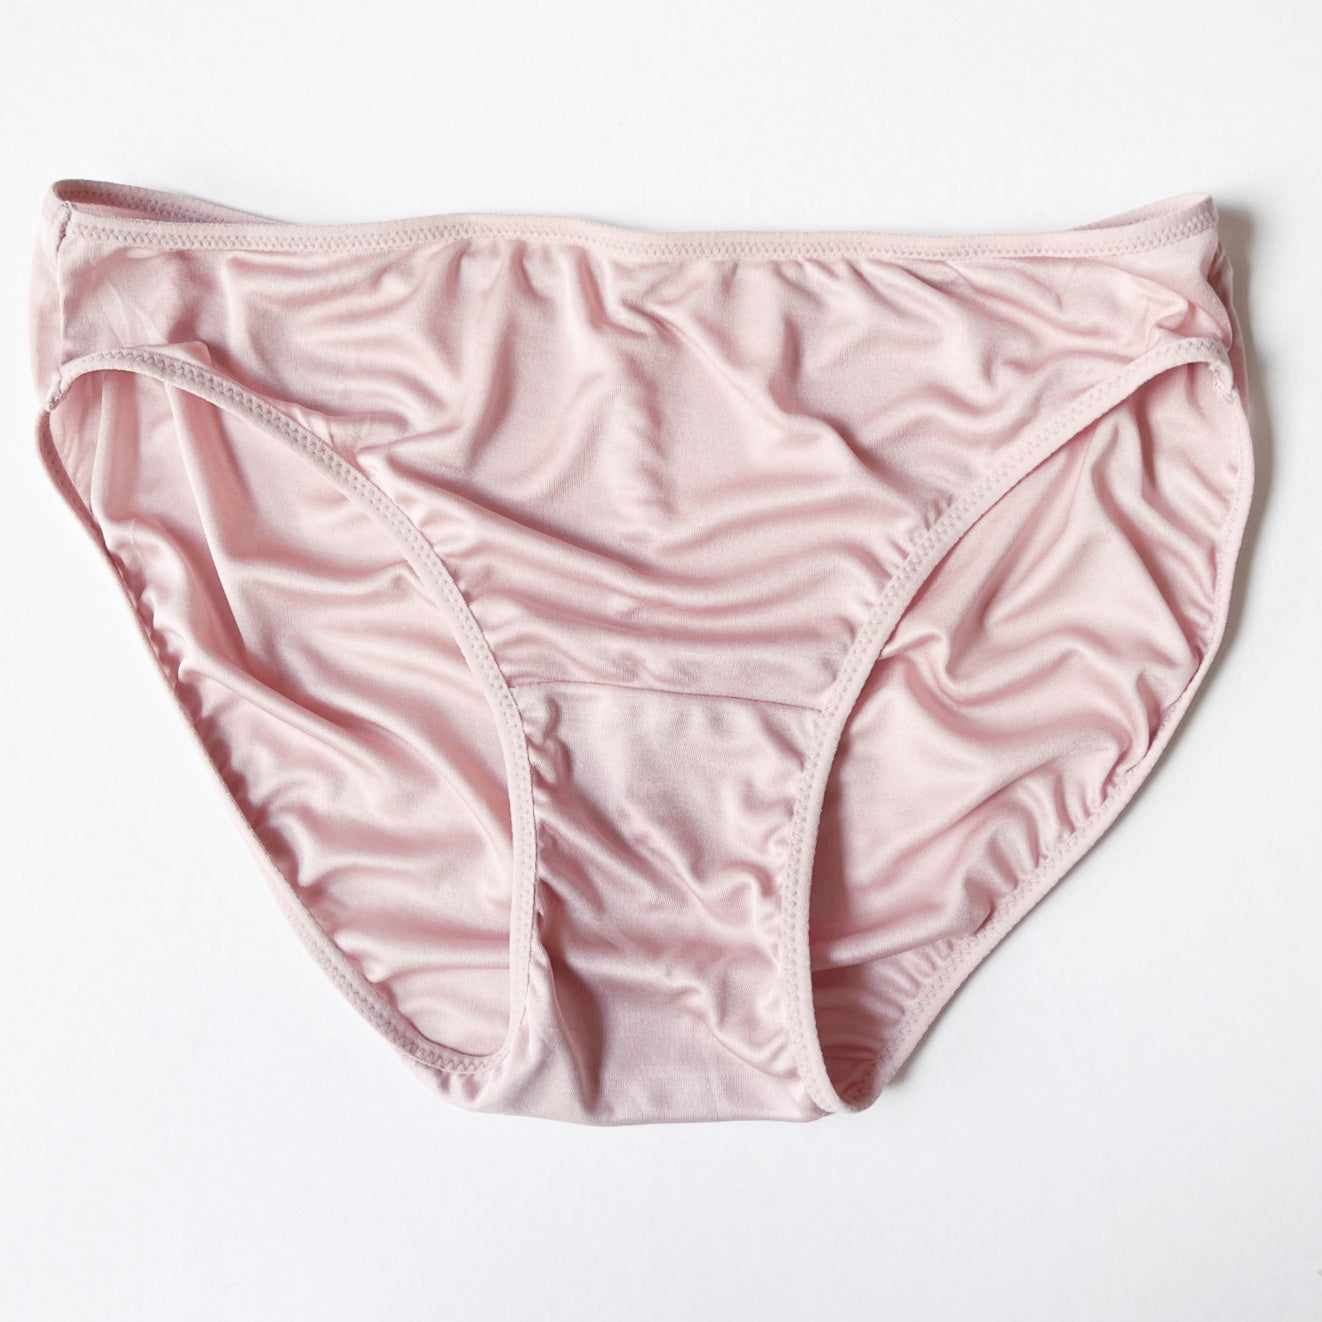 100% silk underwear tops